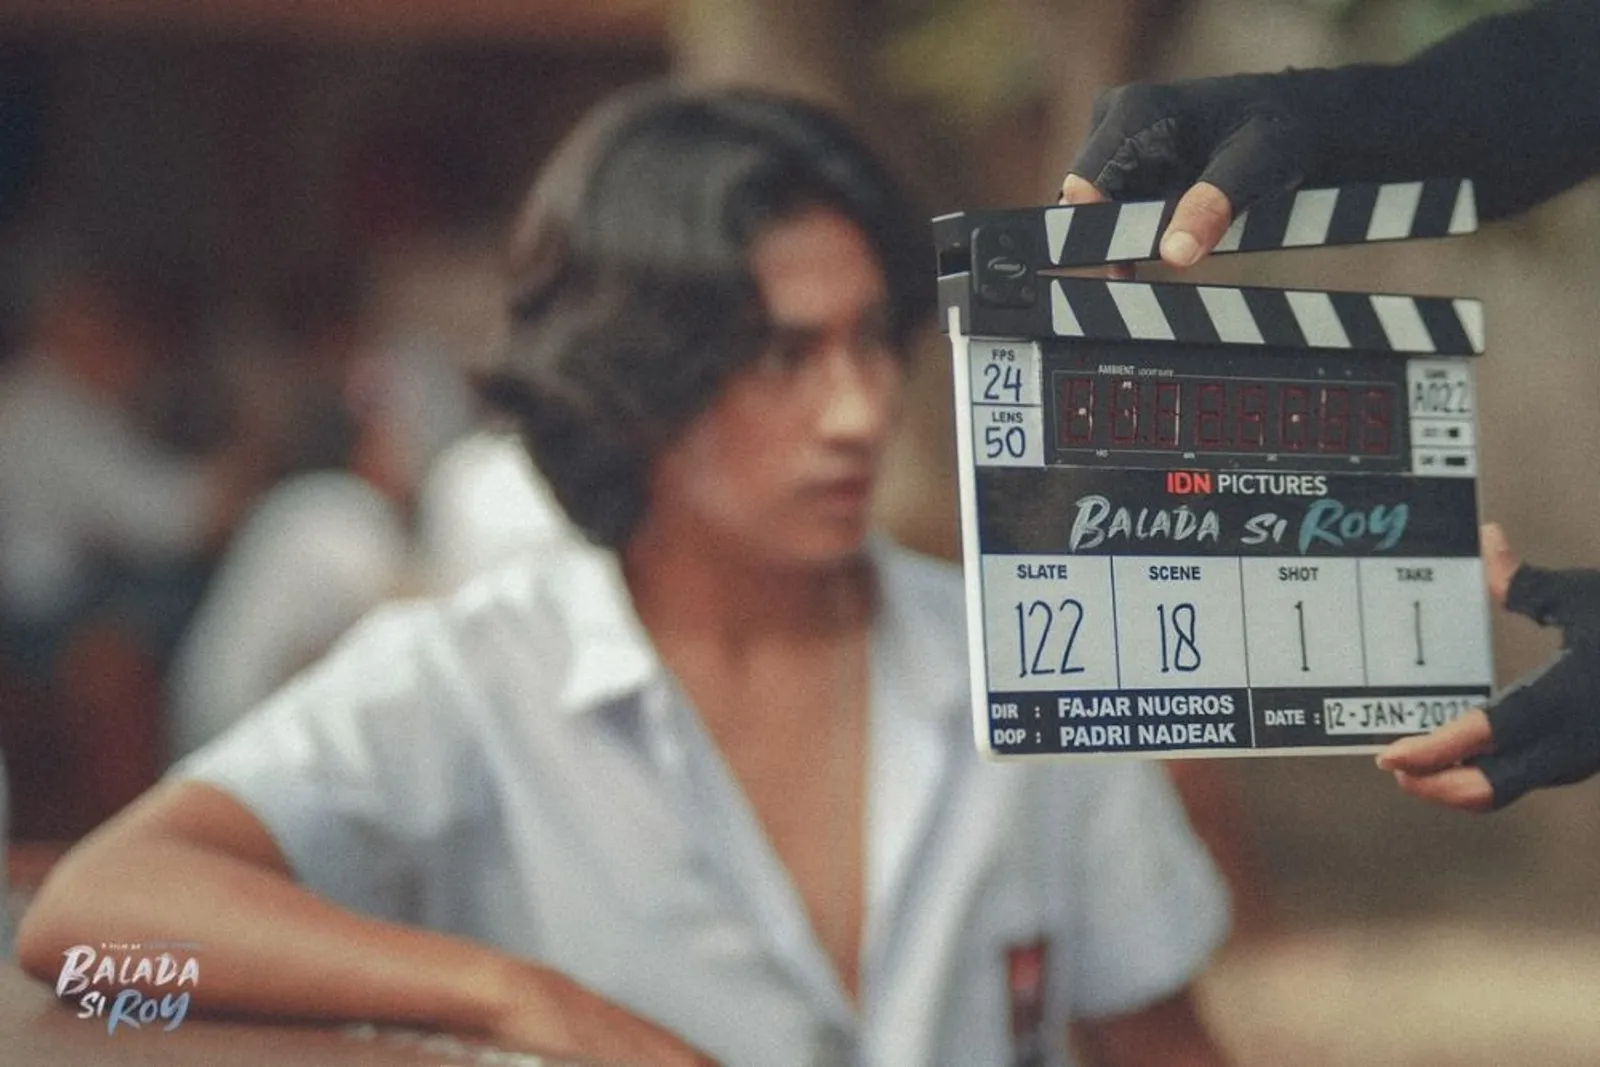 Aldo Gudel Ungkap Pengalamannya Bermain di Film 'Balada Si Roy'